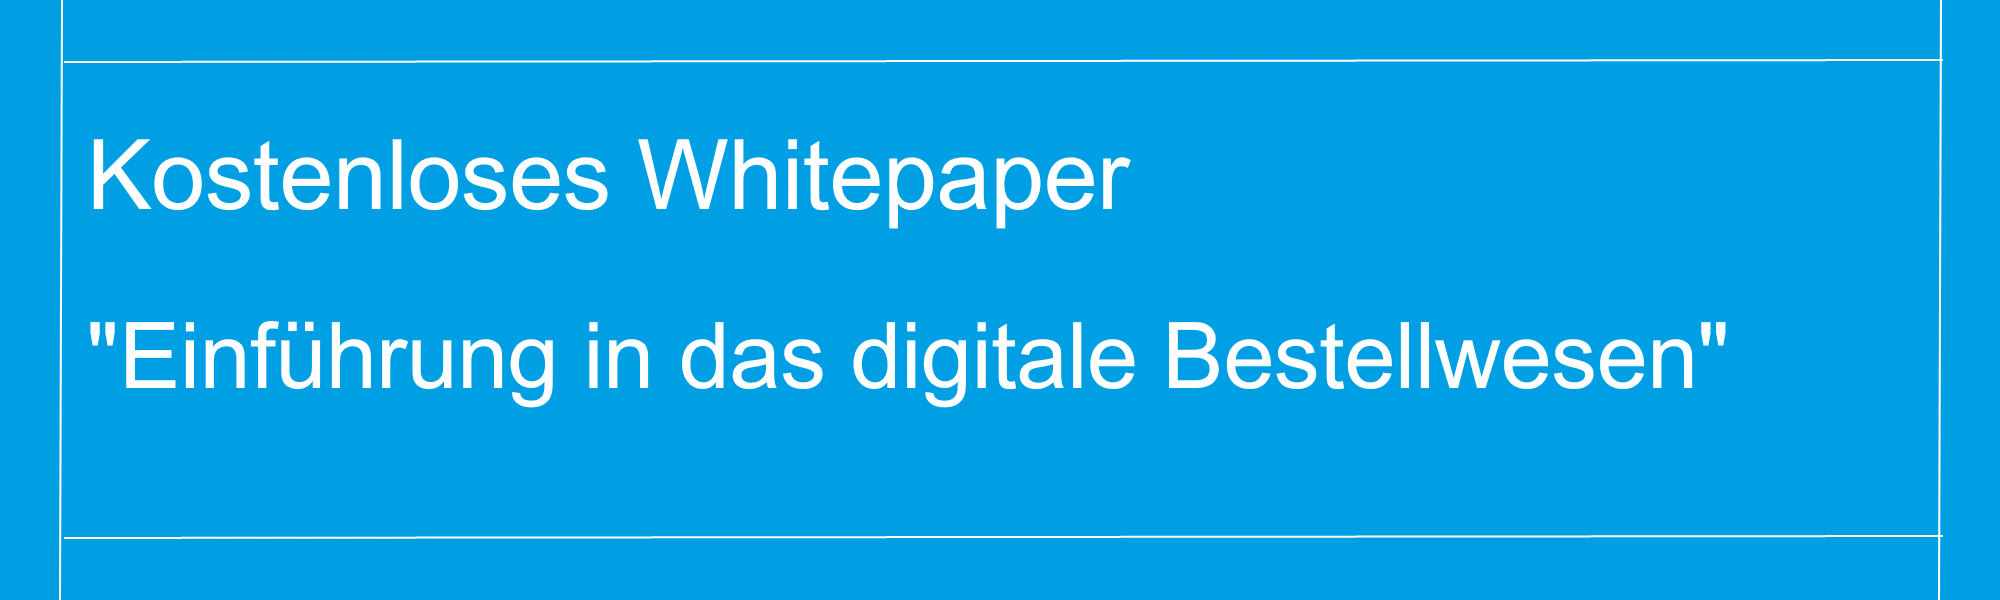 Banner für das kostenlose Whitepaper: "Einführung in das digitale Bestellwesen"